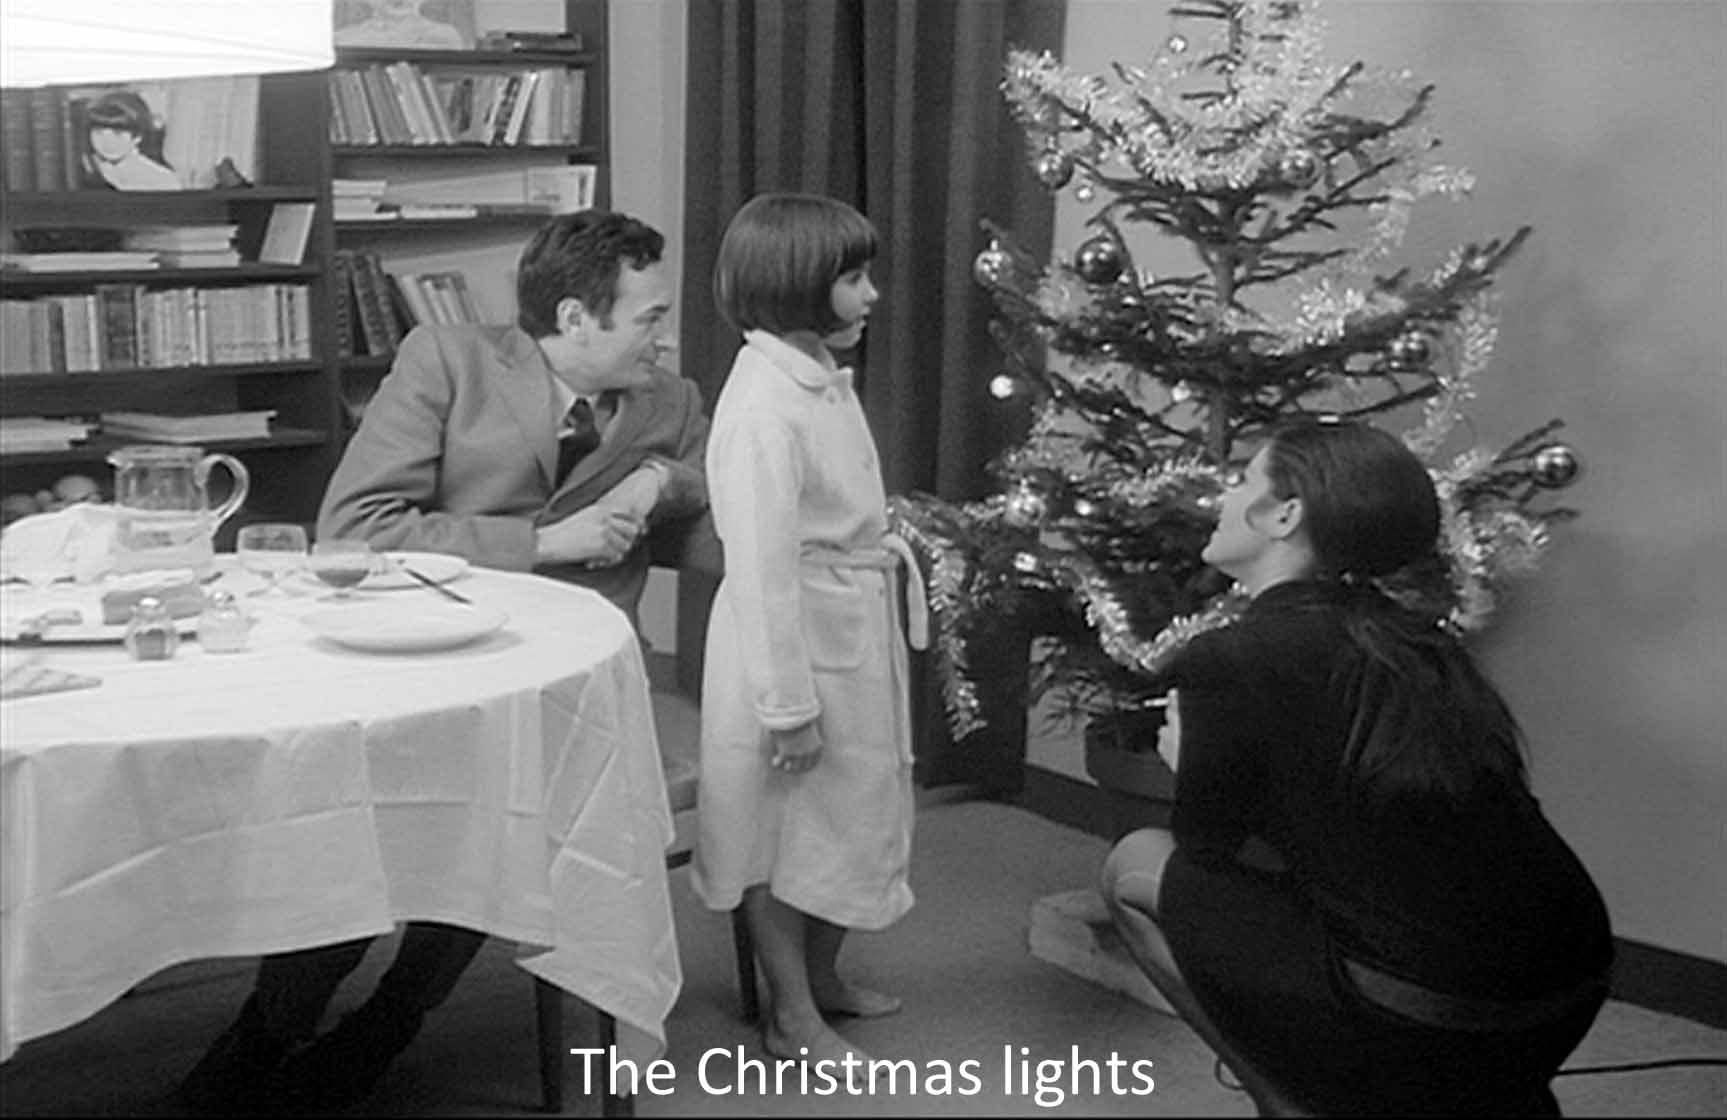  The Christmas lights